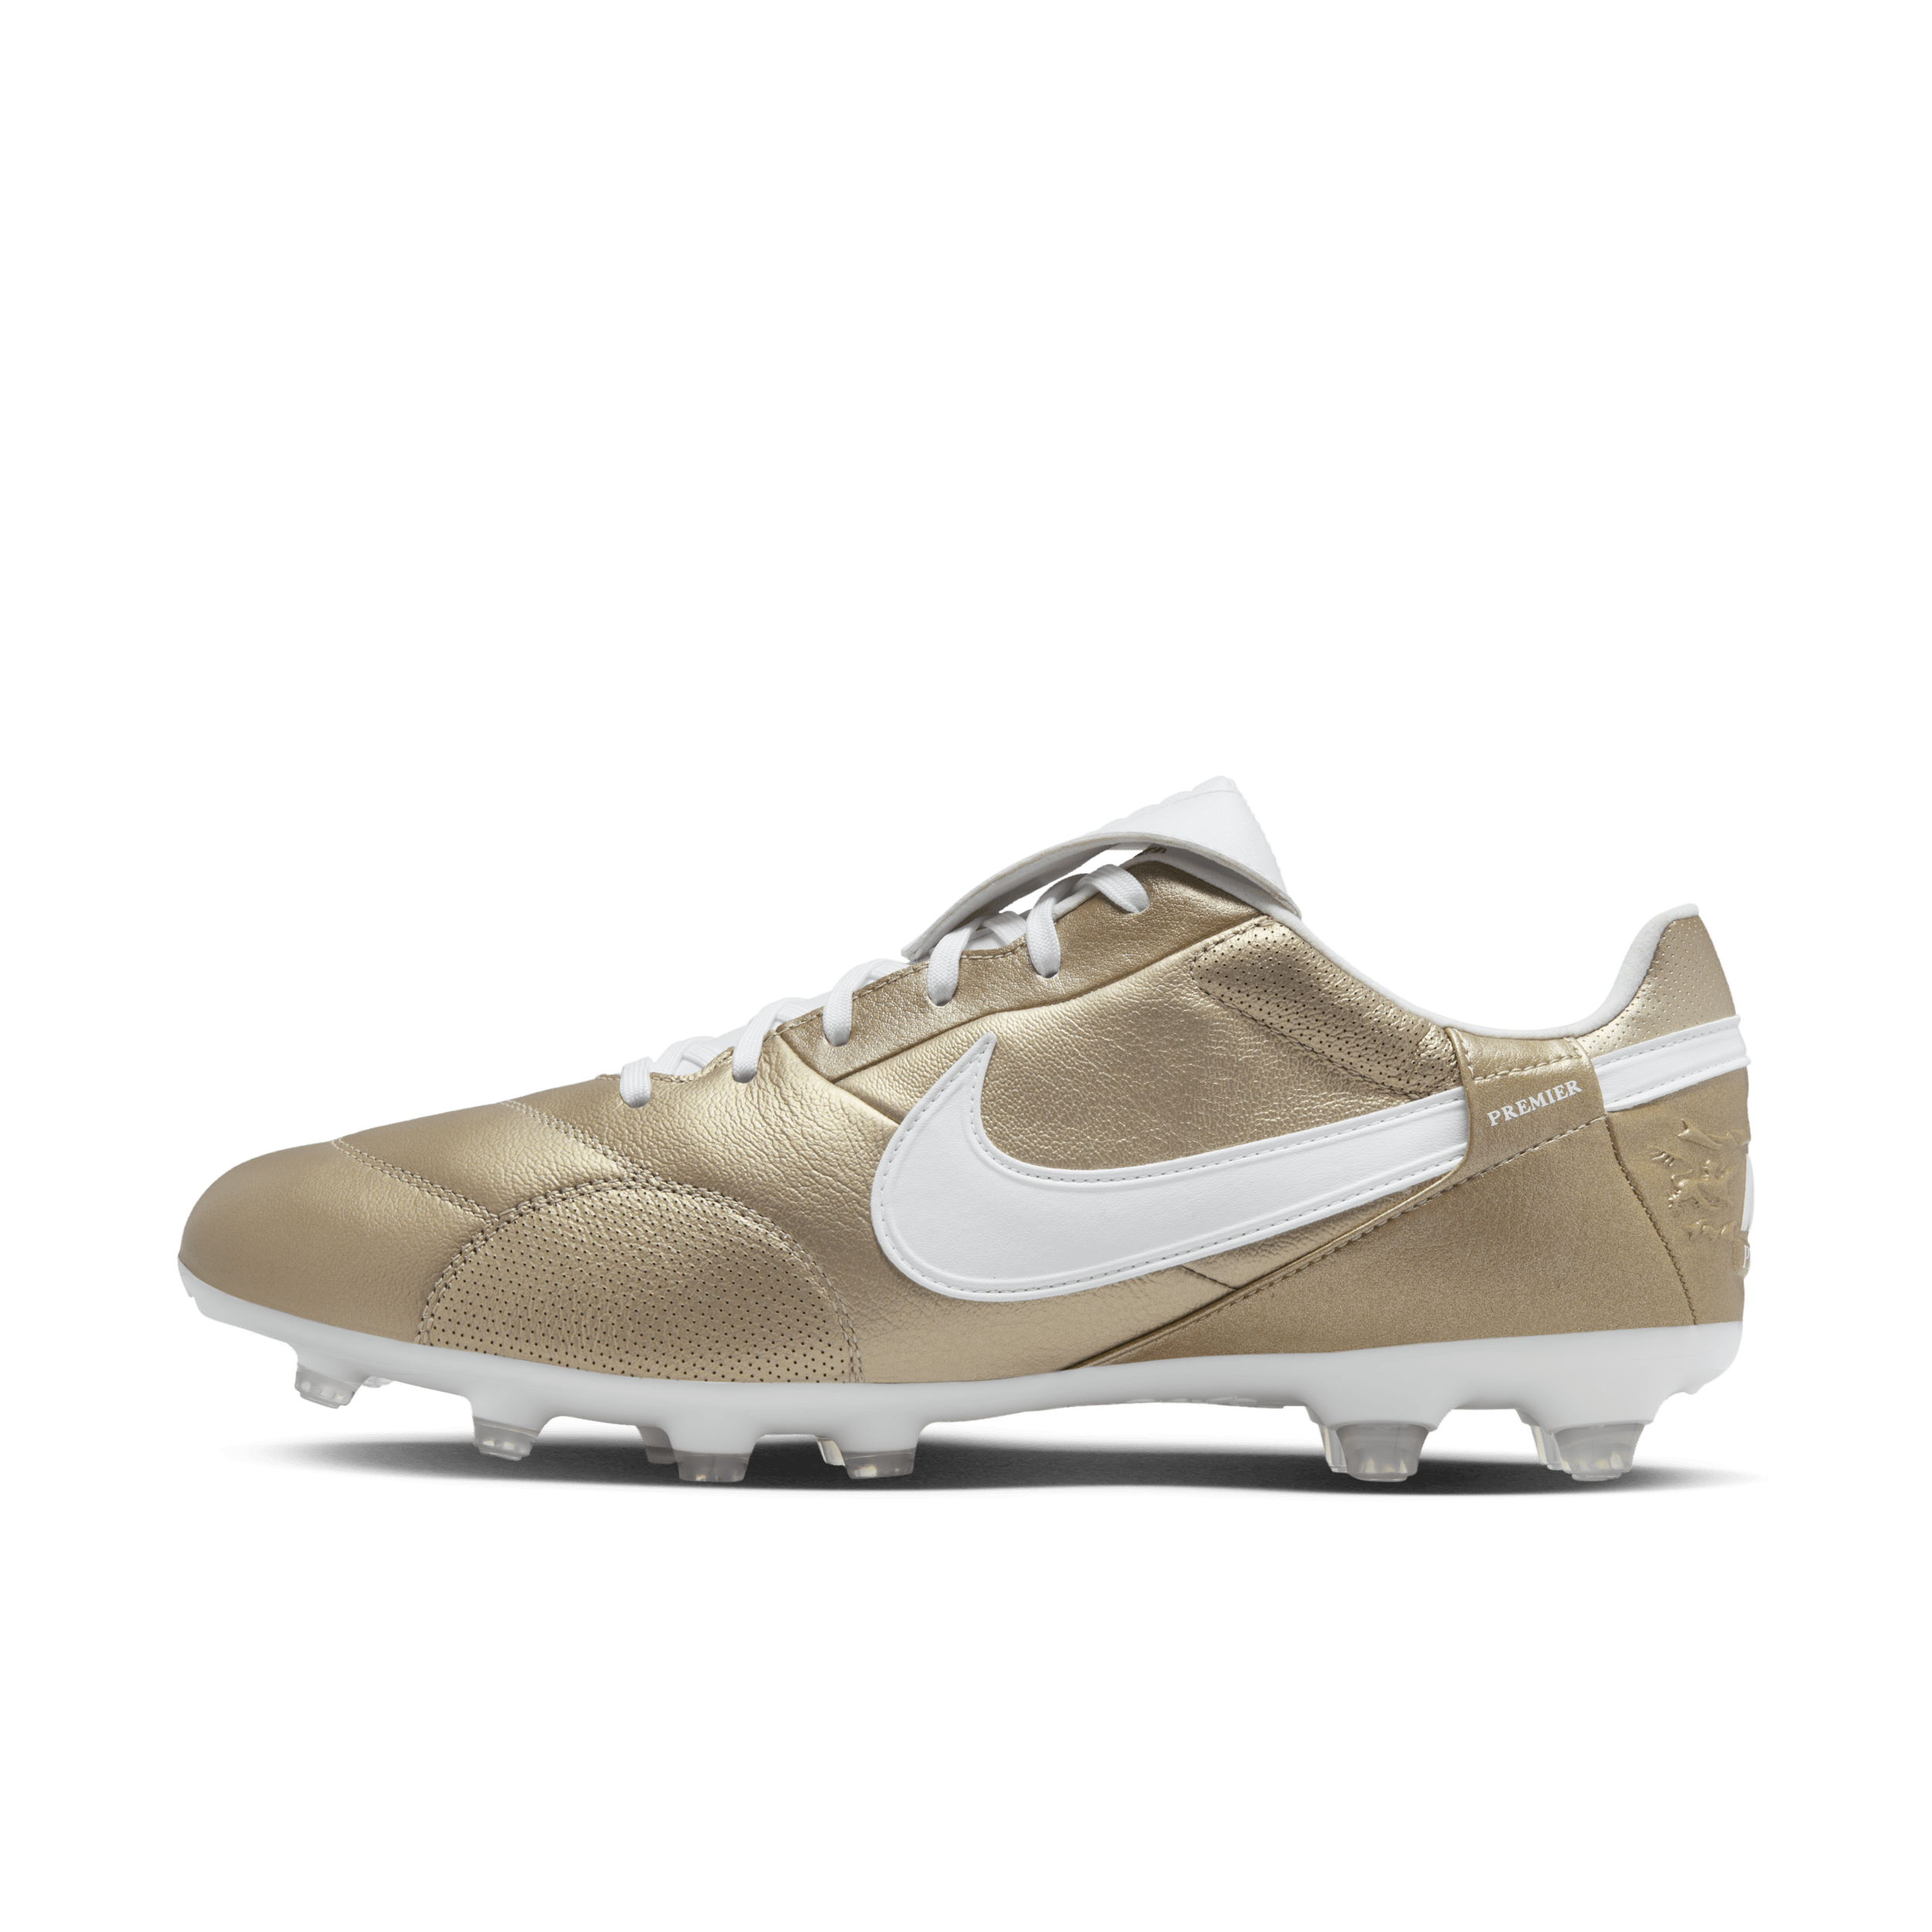 NikePremier 3 low top voetbalschoenen (stevige ondergrond) - Bruin